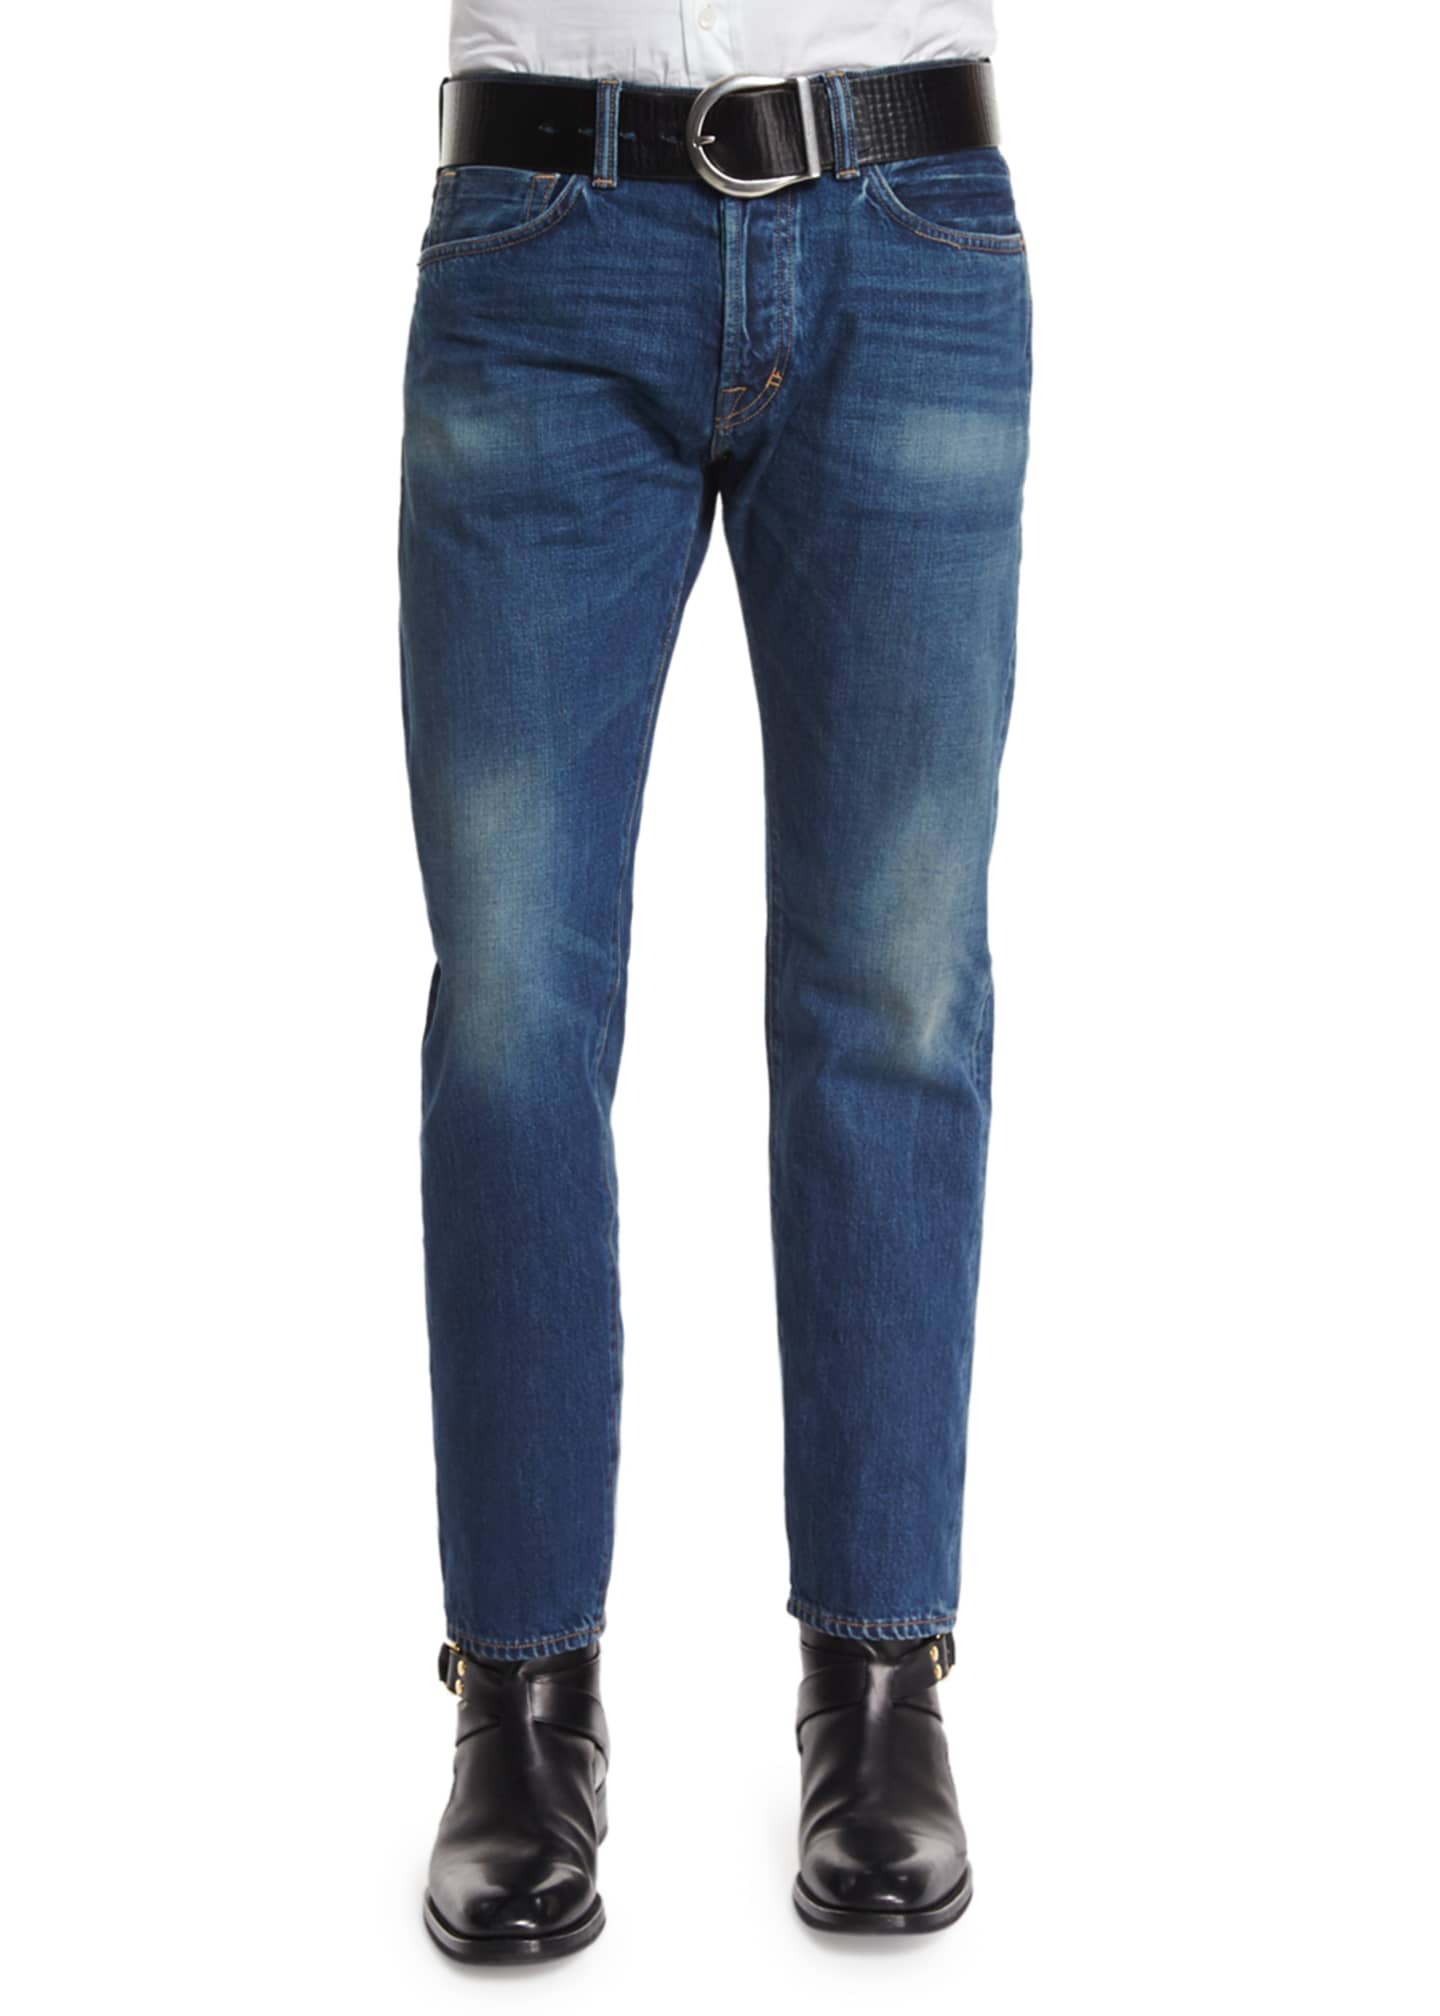 TOM FORD Regular-Fit Vintage Wash Selvedge Denim Jeans, Blue - Bergdorf  Goodman